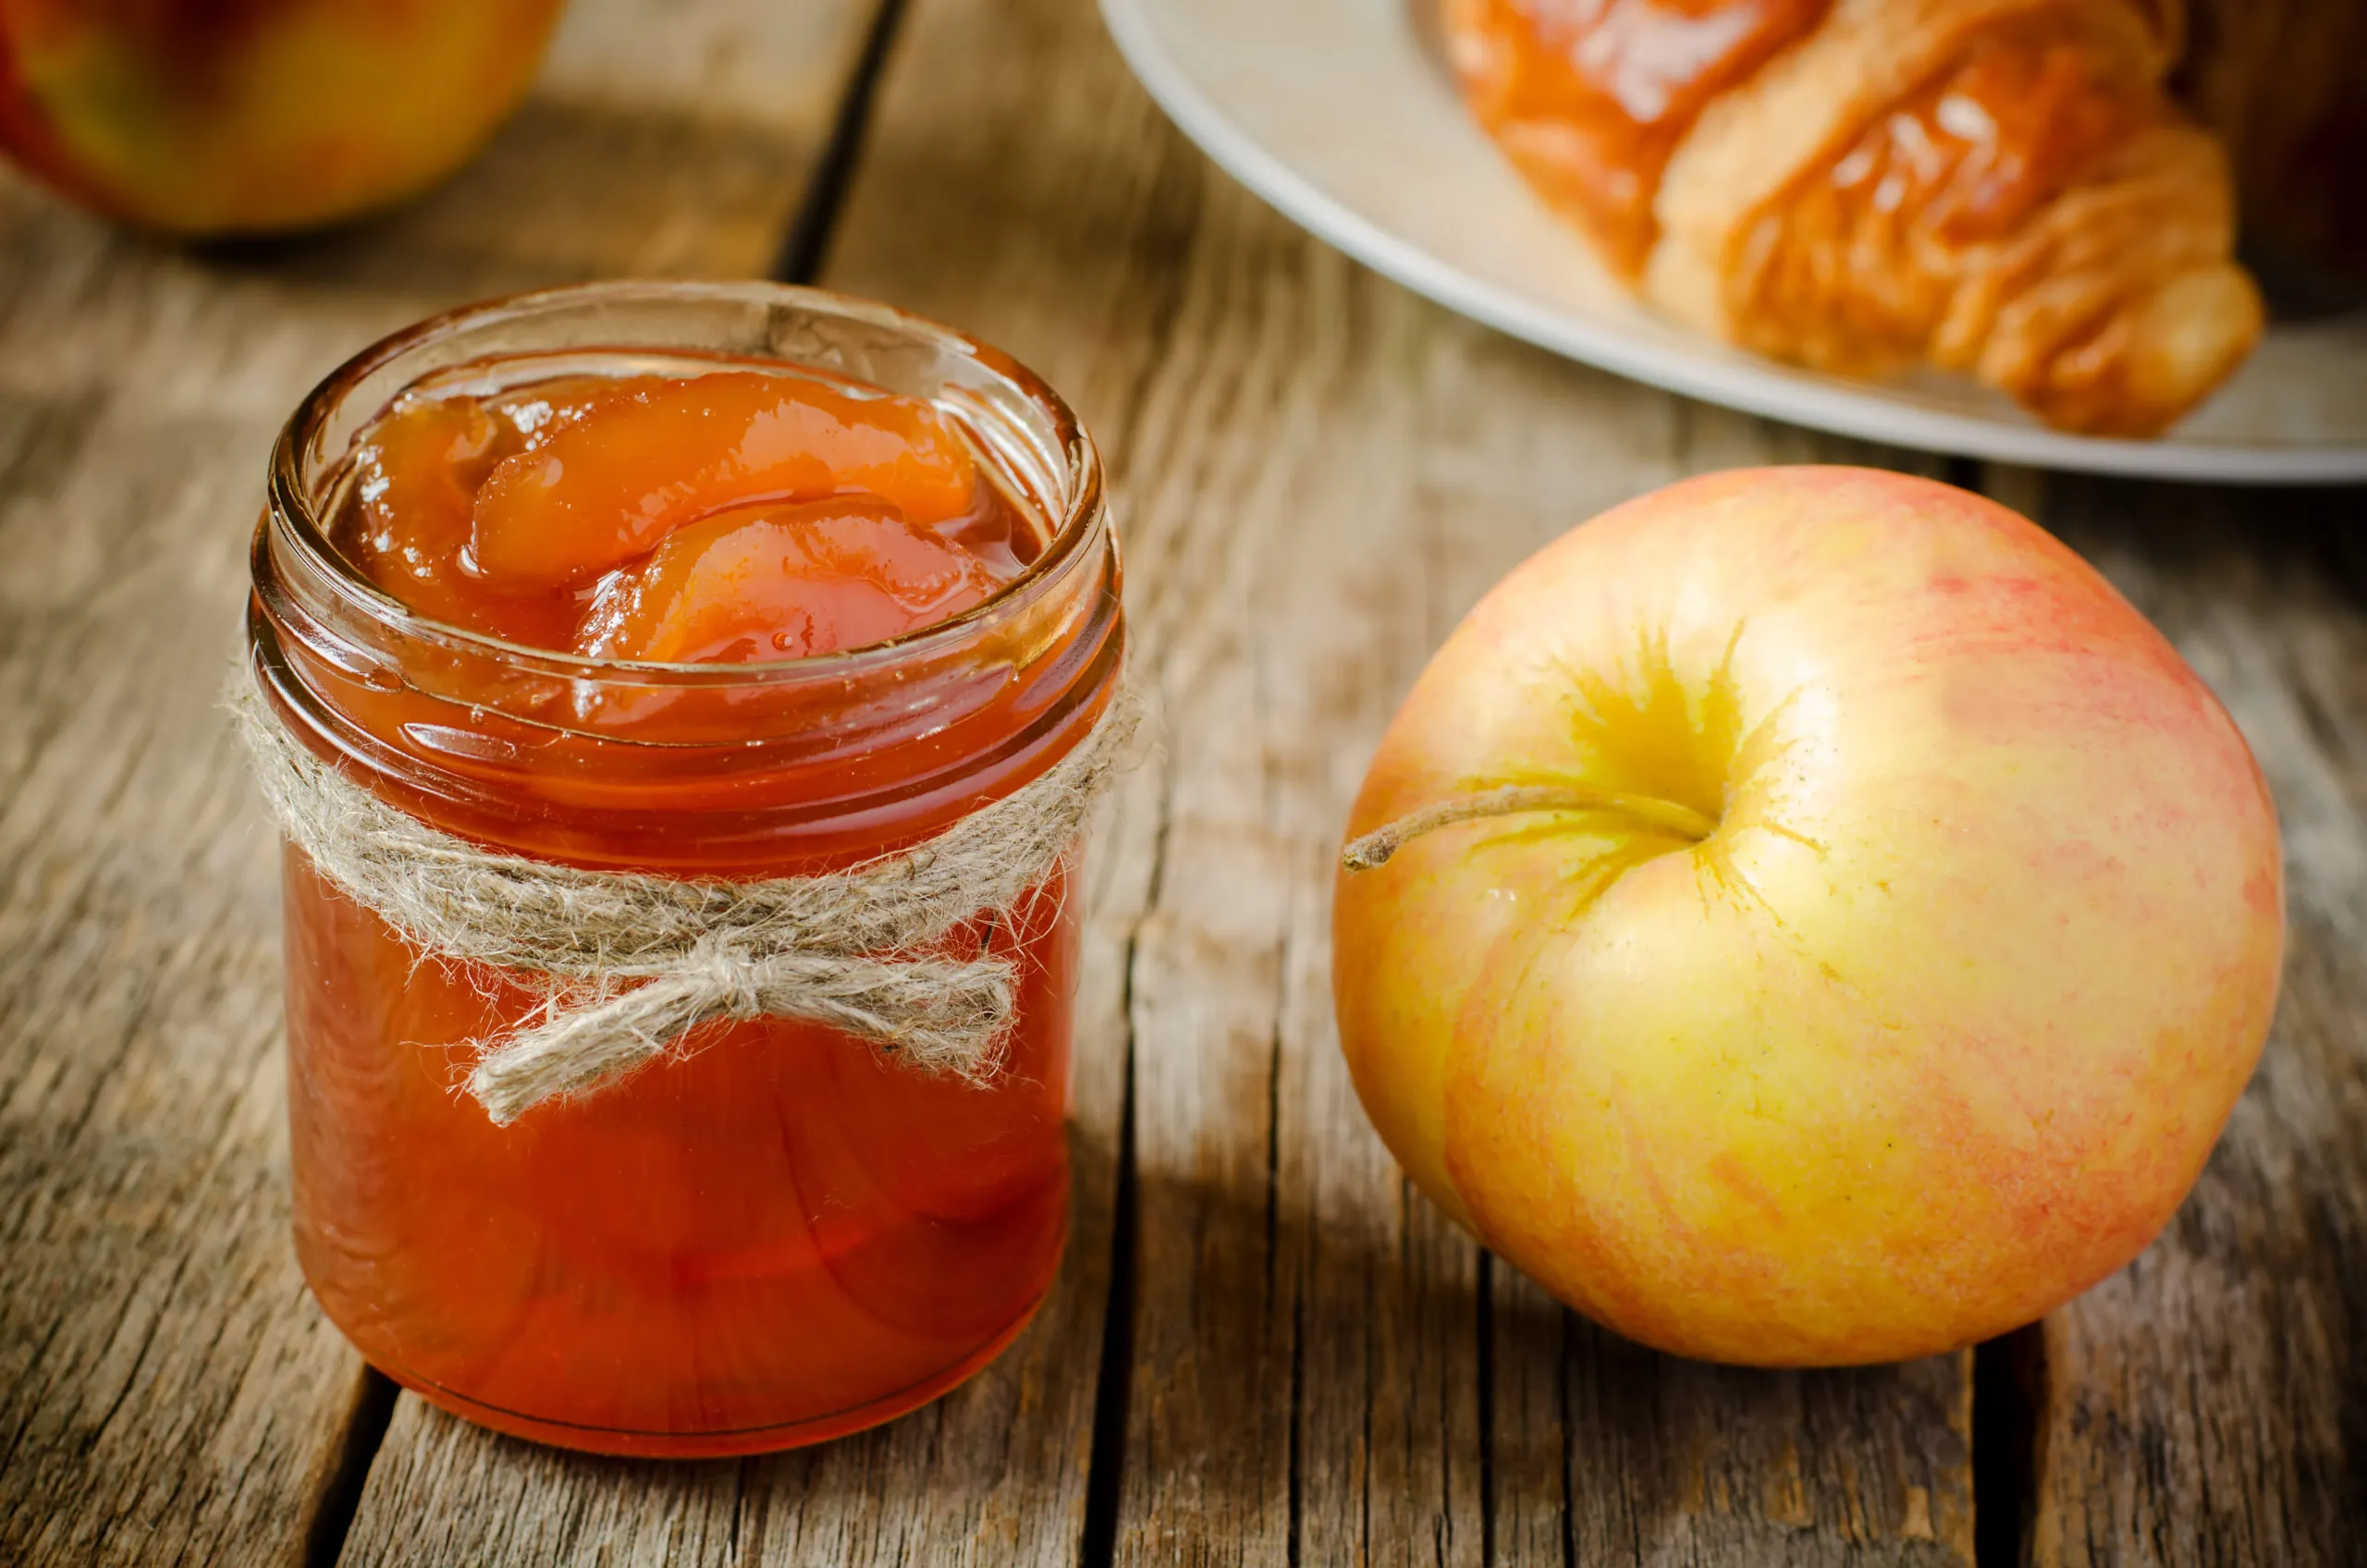 Вариант 2: Быстрый и простой рецепт варенья из яблок на зиму